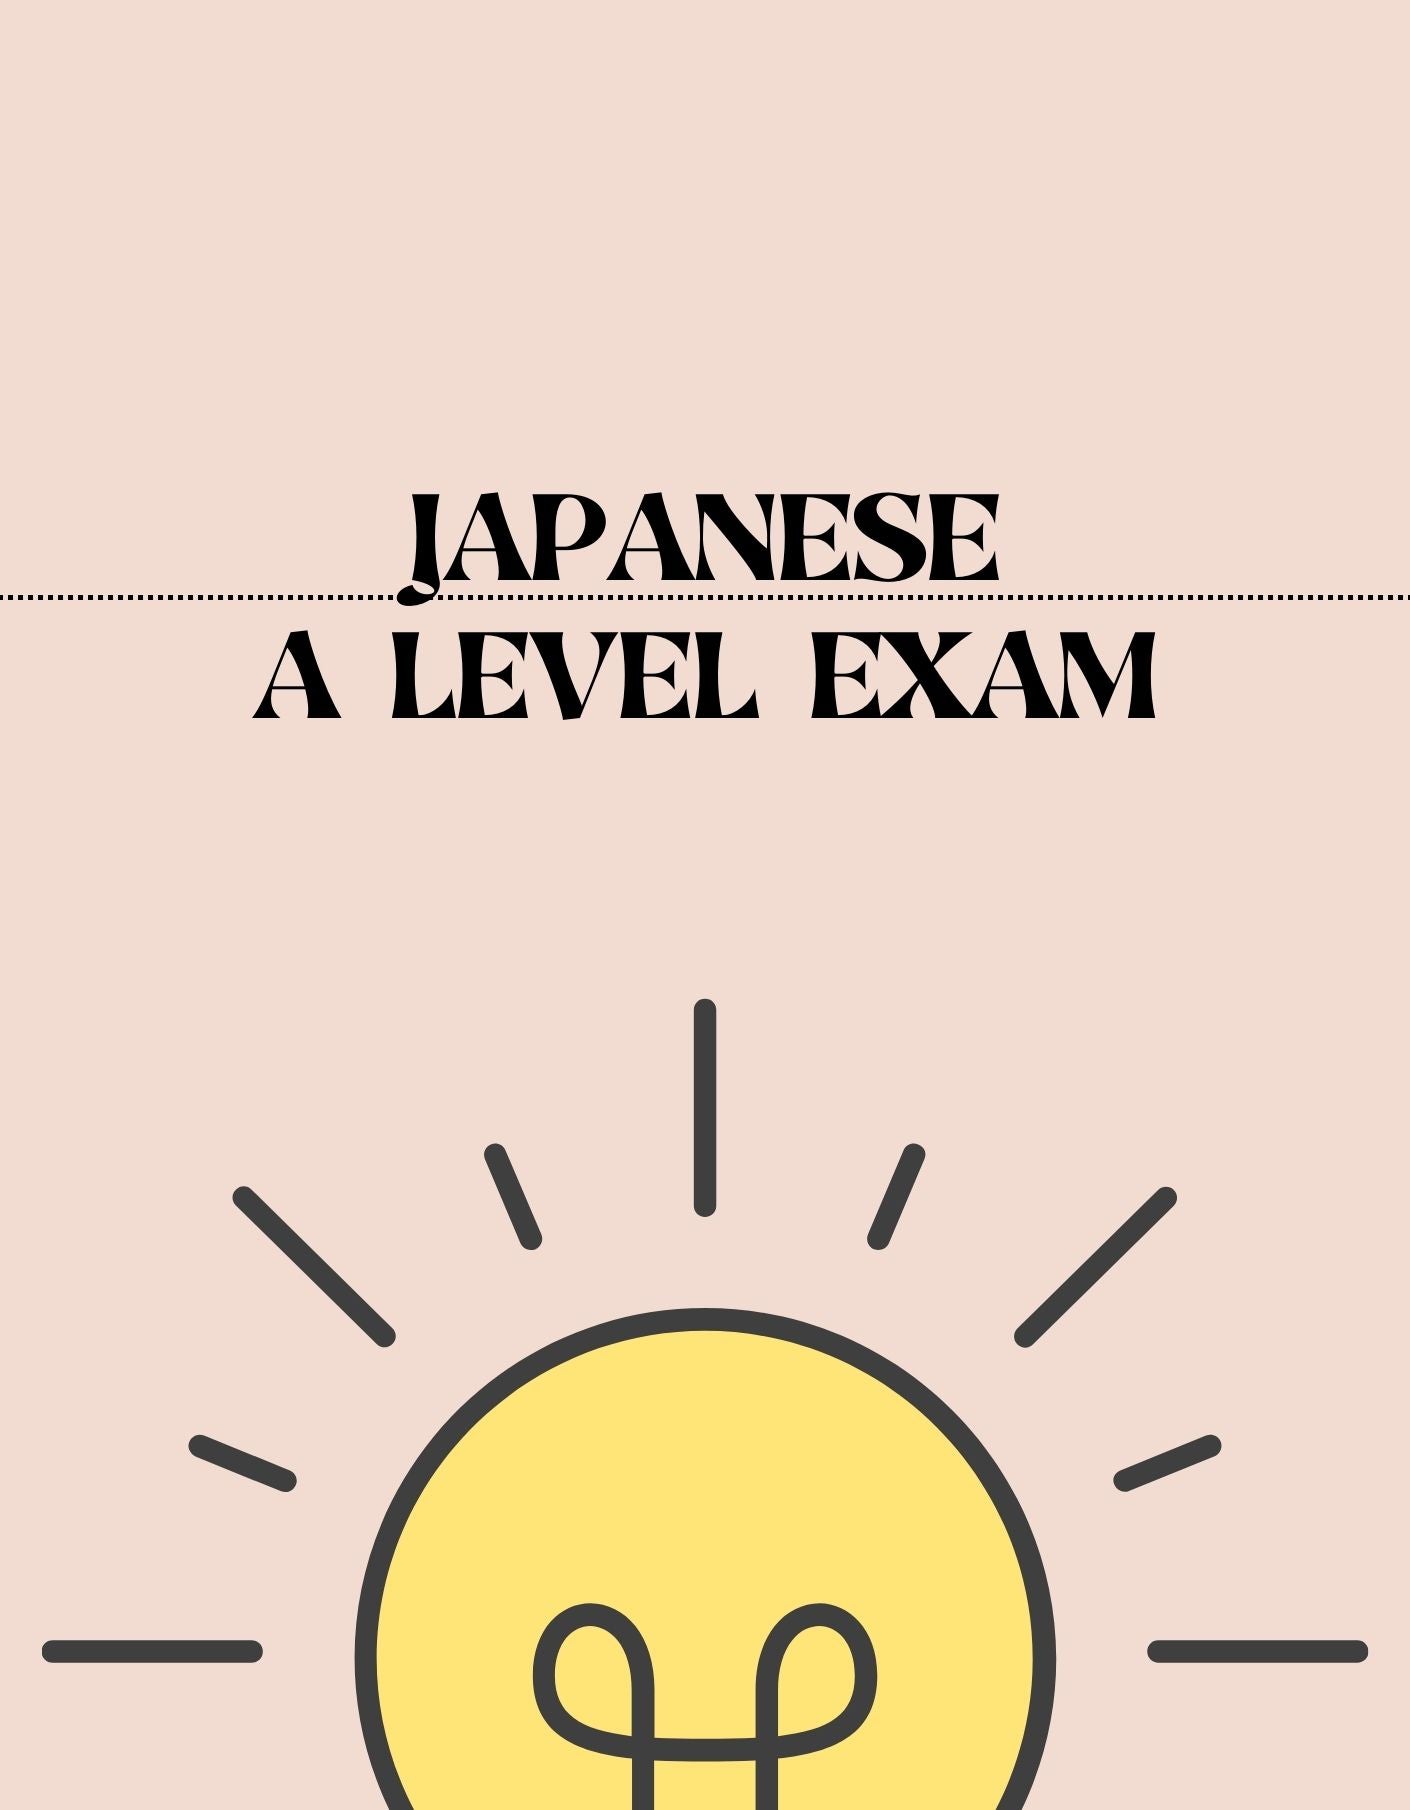 A Level - Japanese Exam - Exam Centre Birmingham Limited